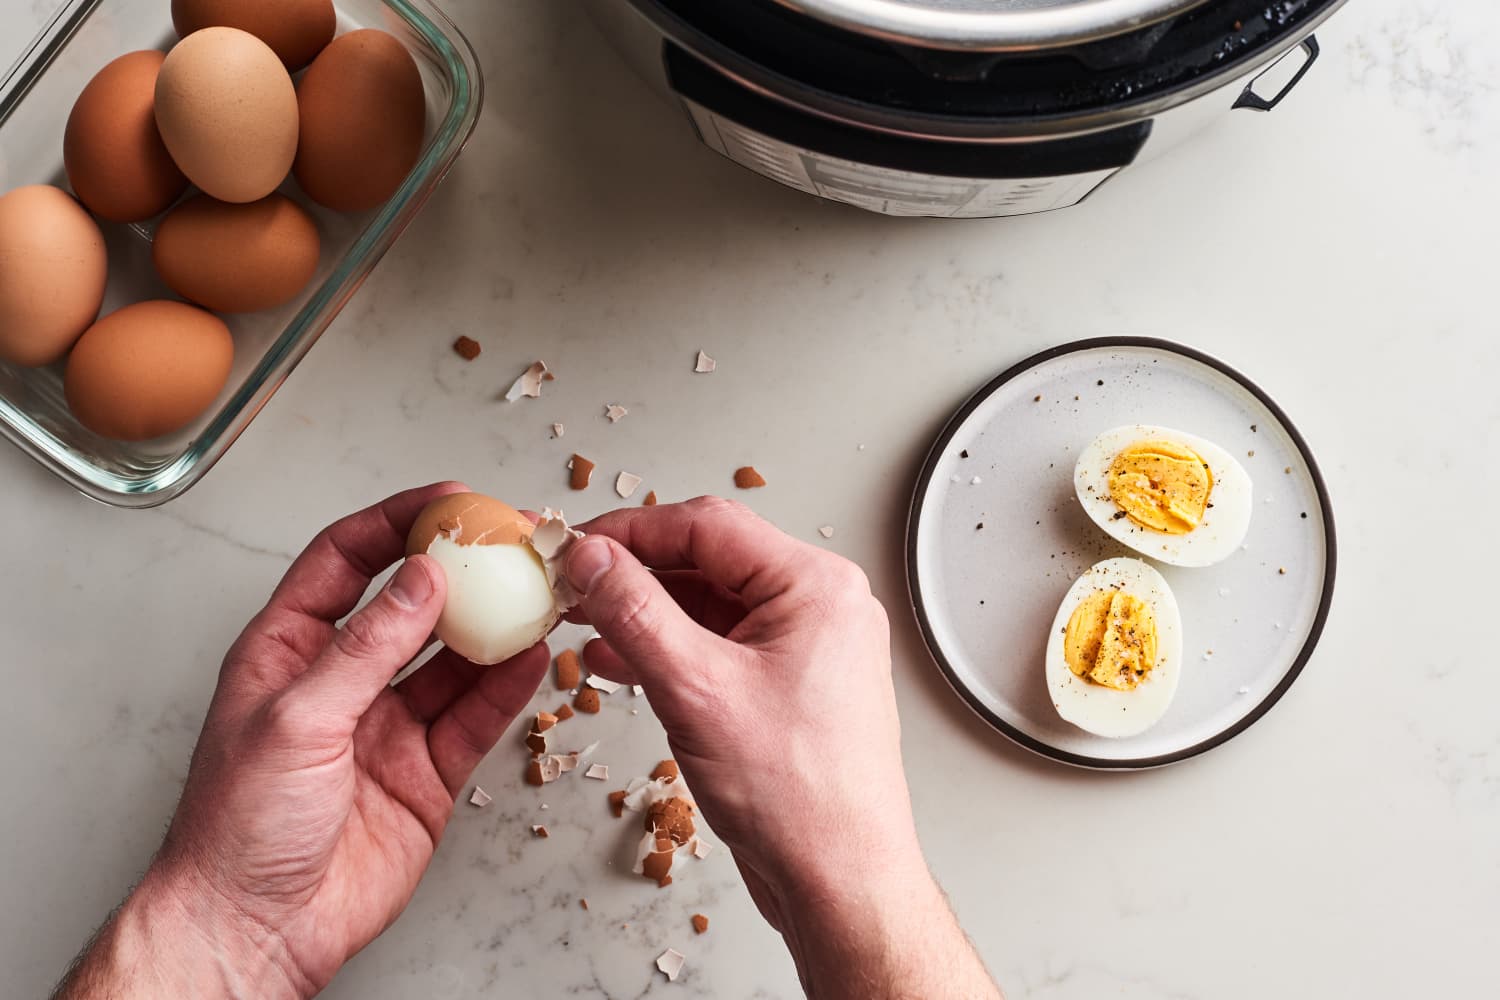 Сколько минут варить яйца всмятку после закипания воды, как правильно варить на газовой и электроплите